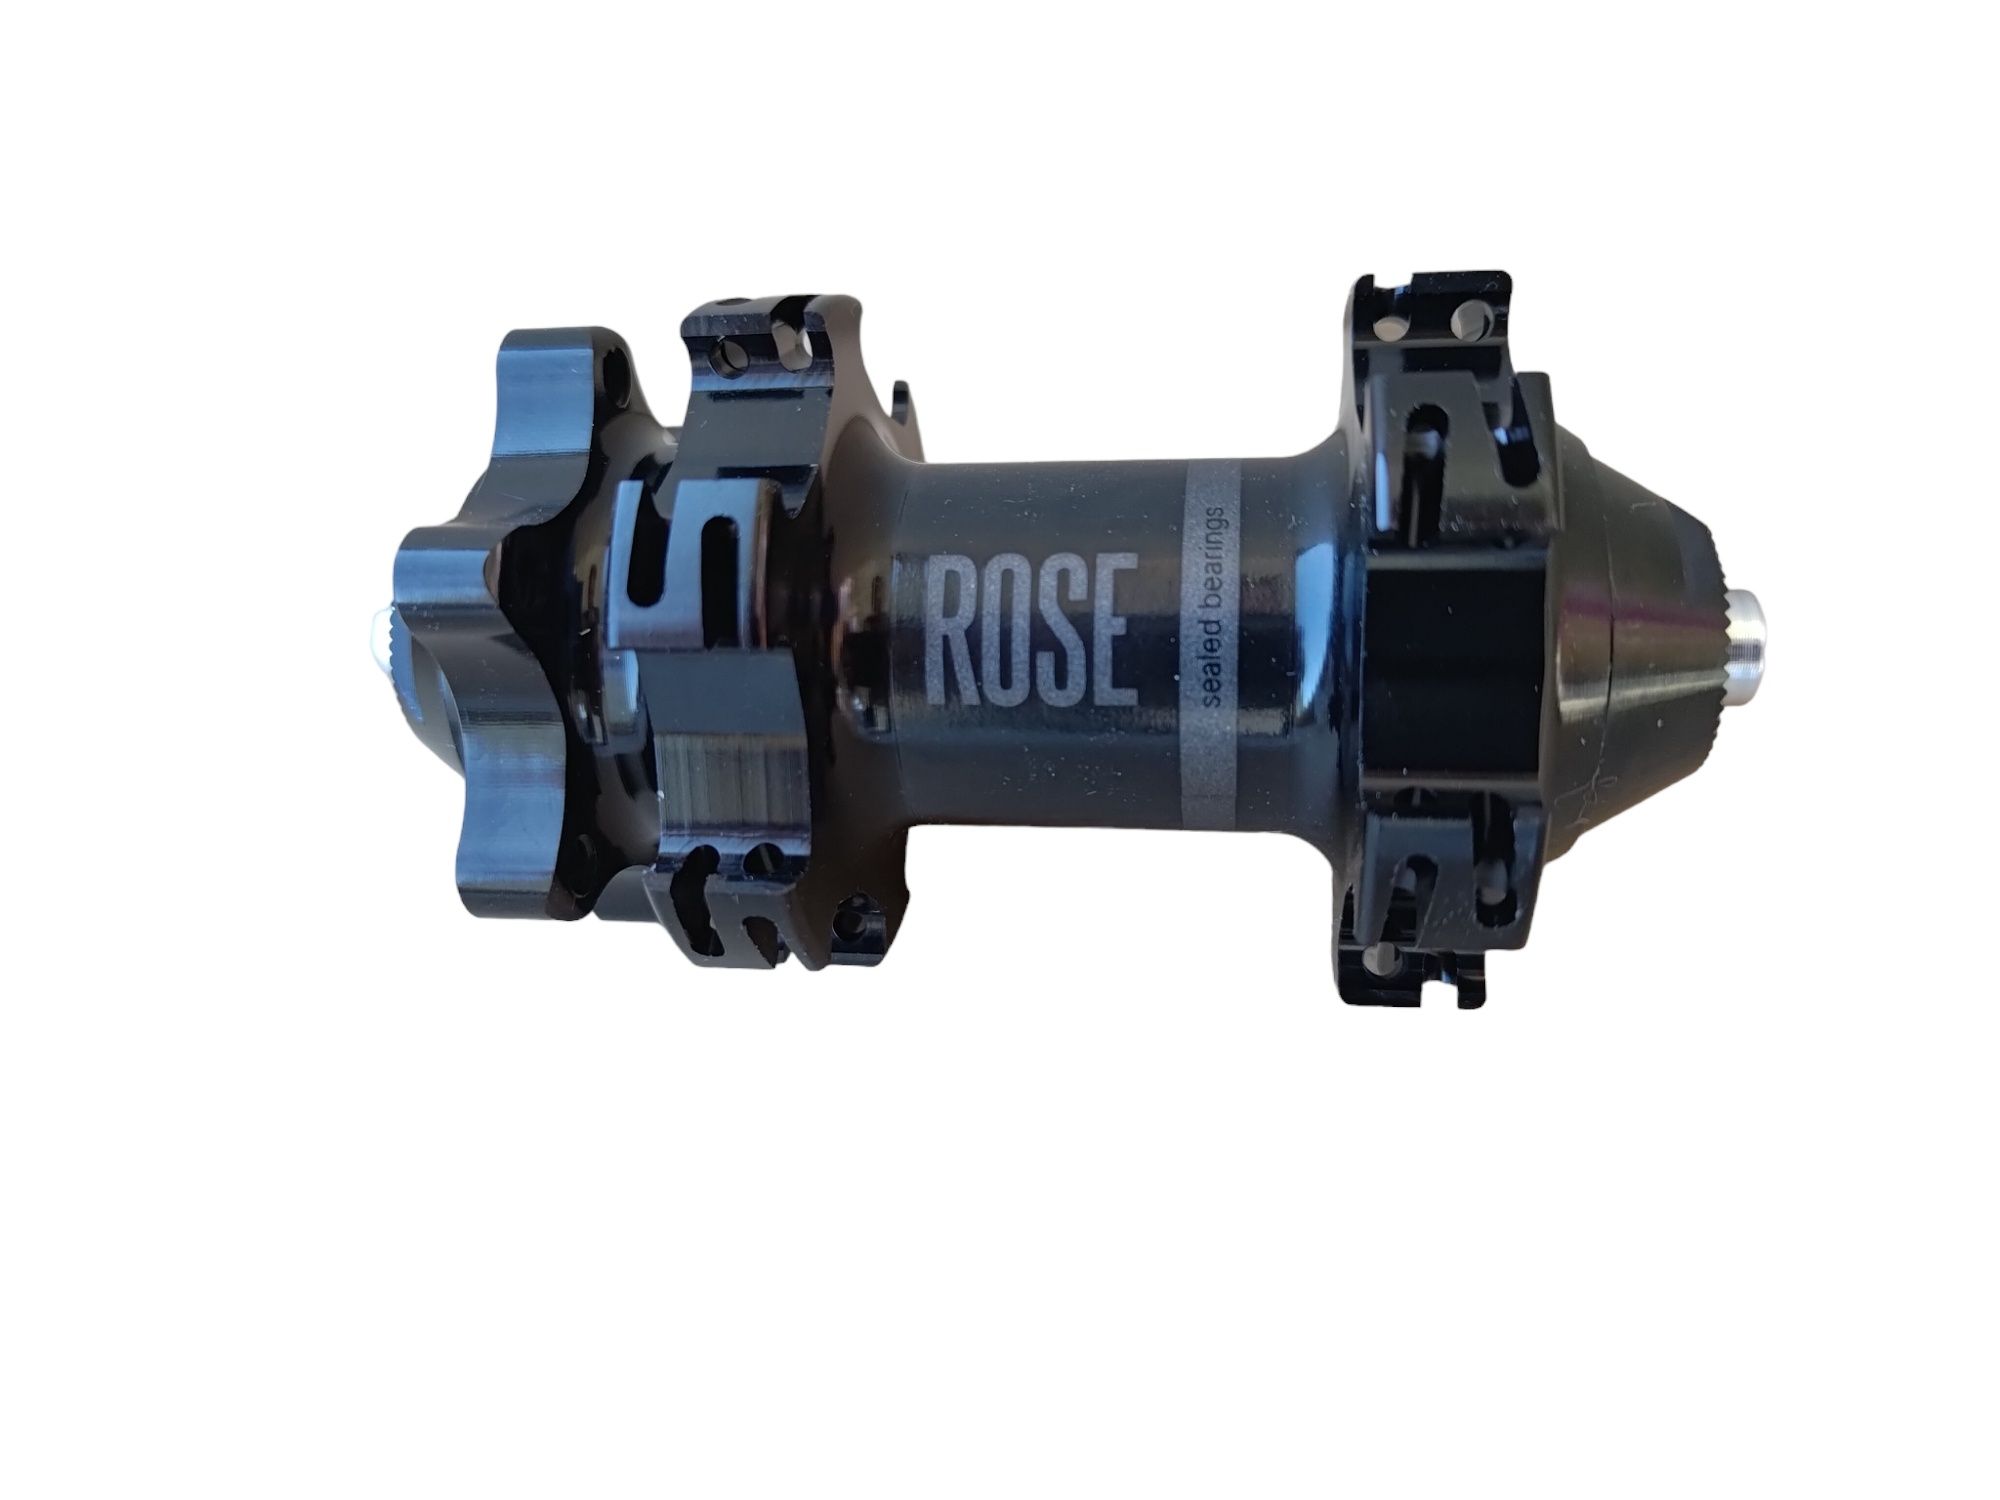 Piasta przednia Rose CR1900, 24 otwory, dość / nowa / FV / 024-027